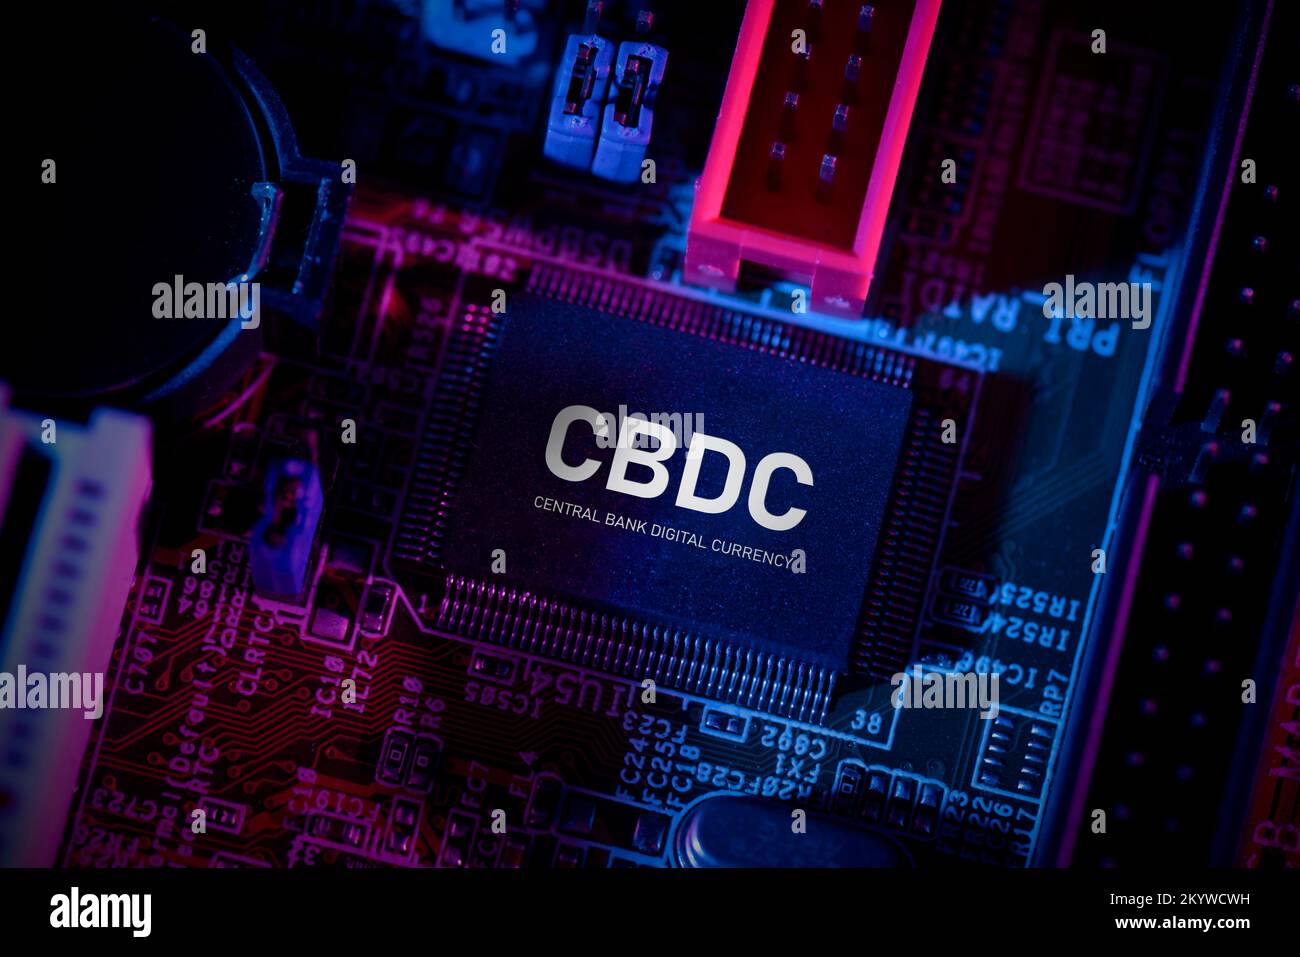 CBDC - tecnología de moneda digital del banco central. Chip de ordenador en placa base Foto de stock